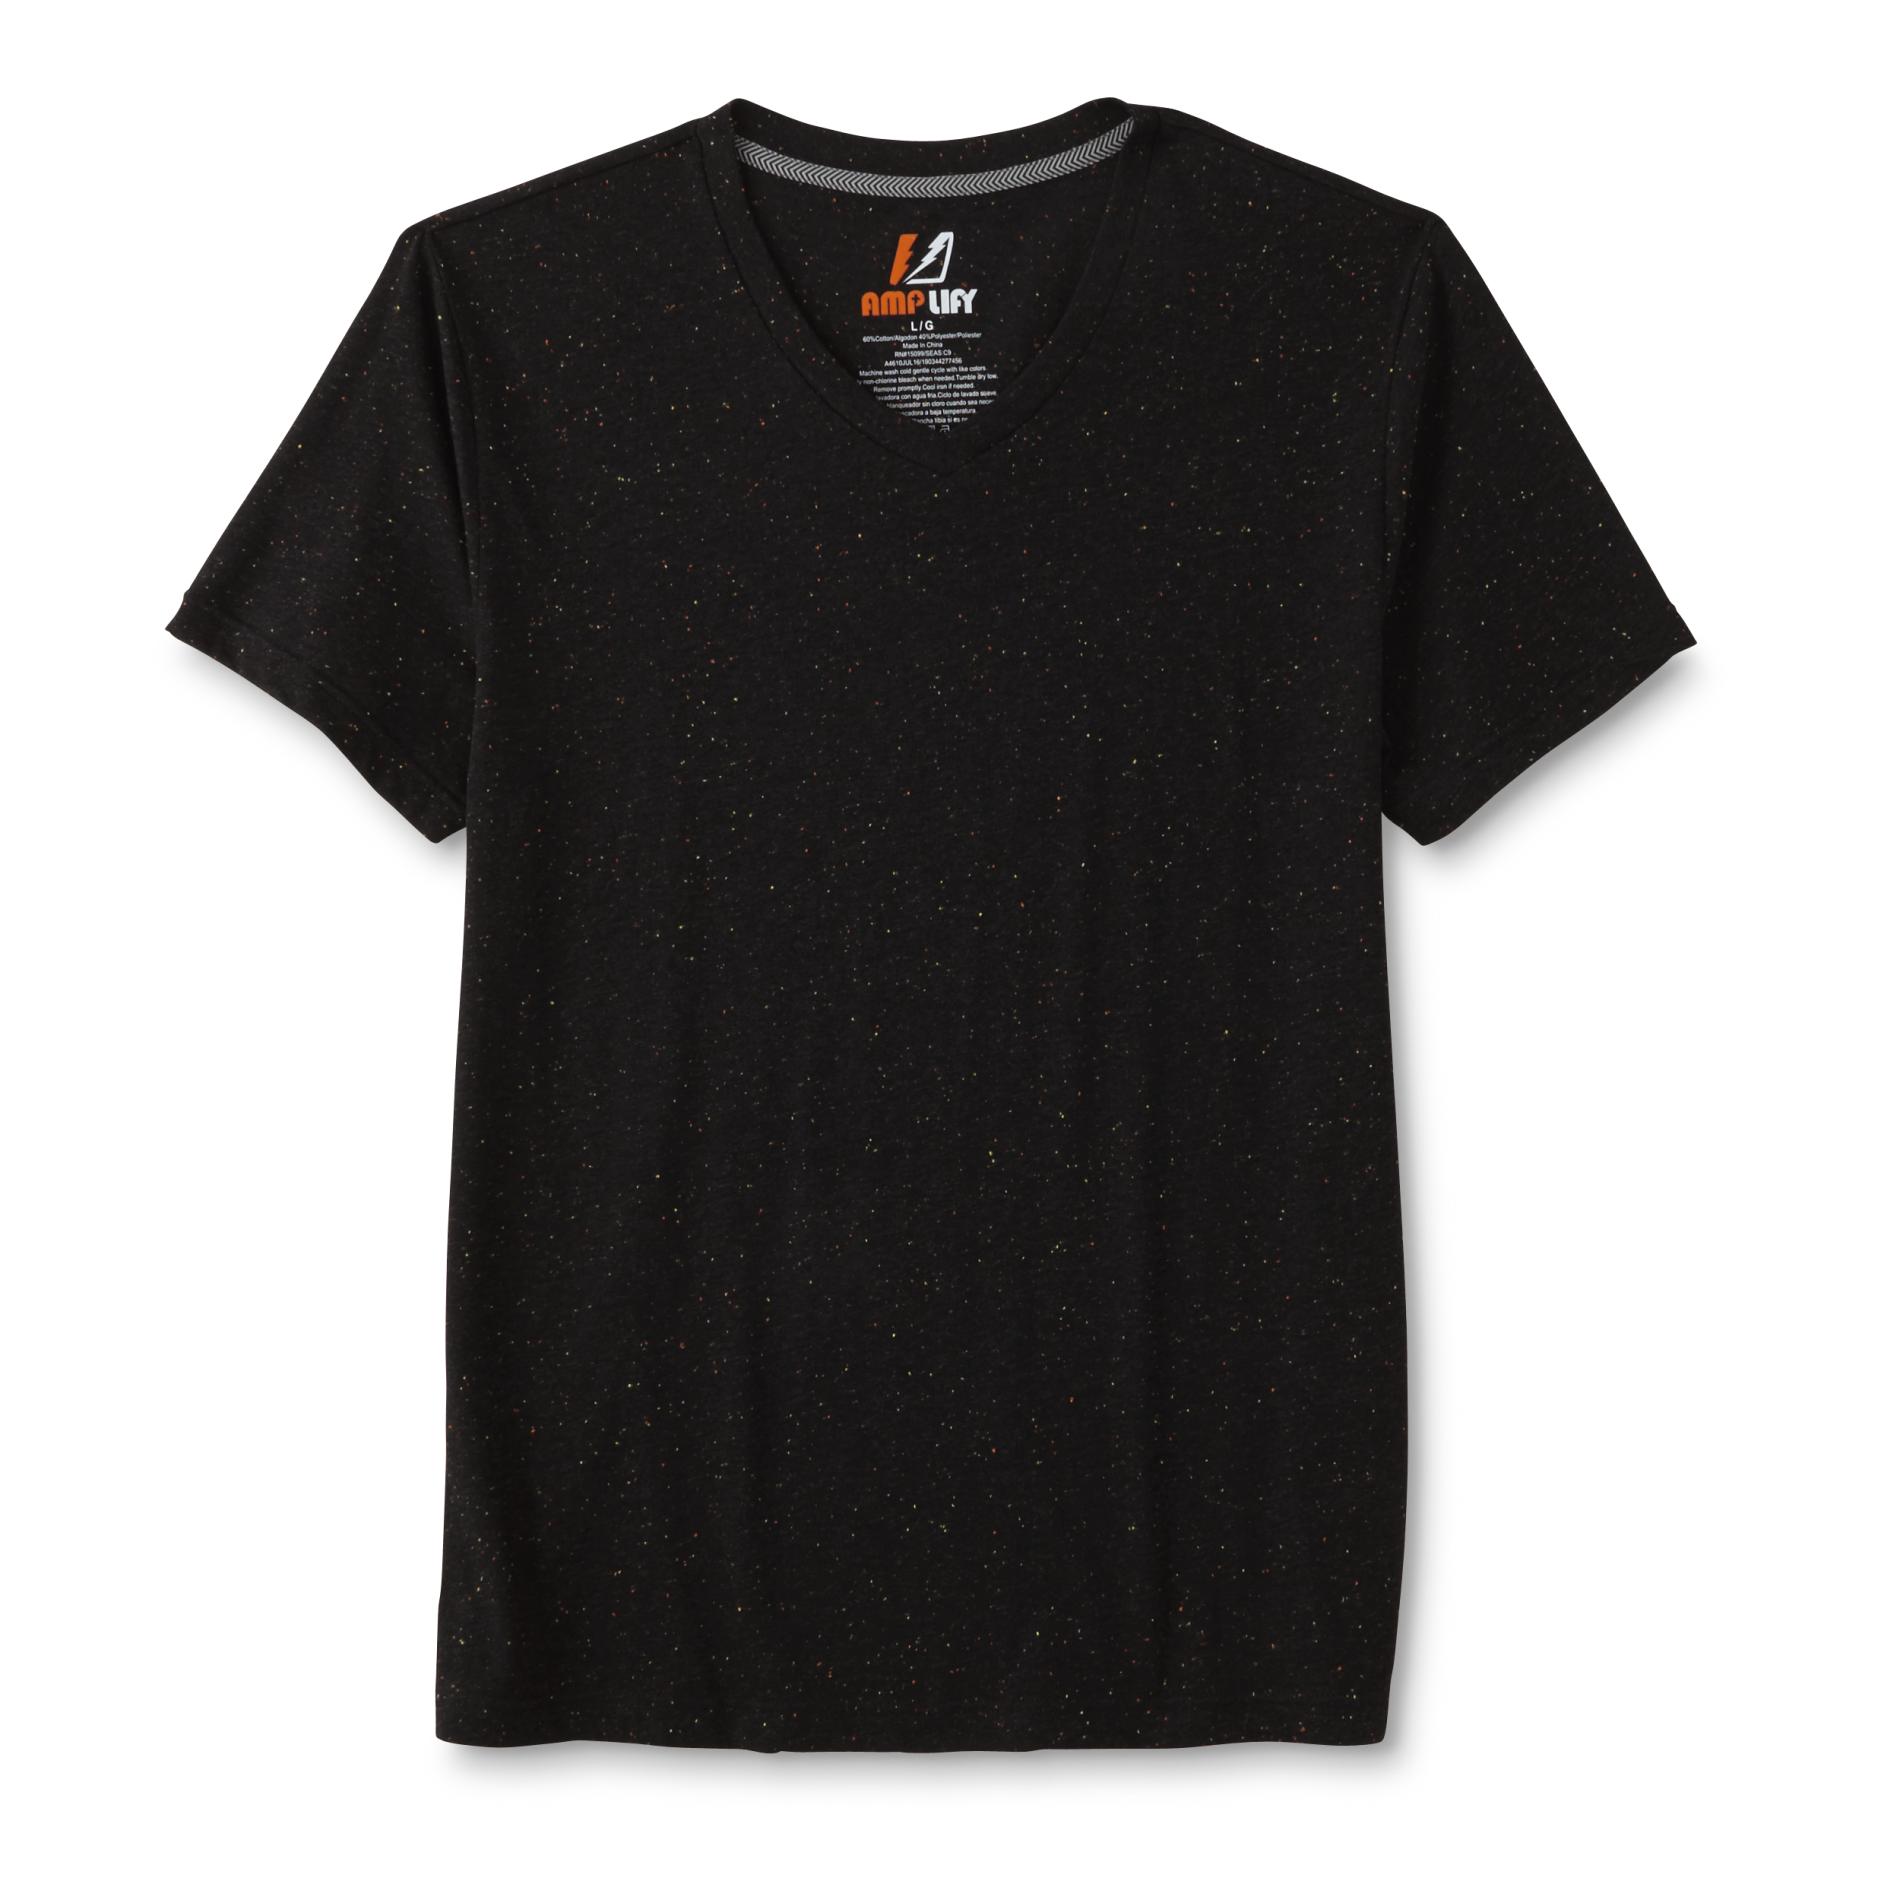 Amplify Young Men's V-Neck T-Shirt - Speckled